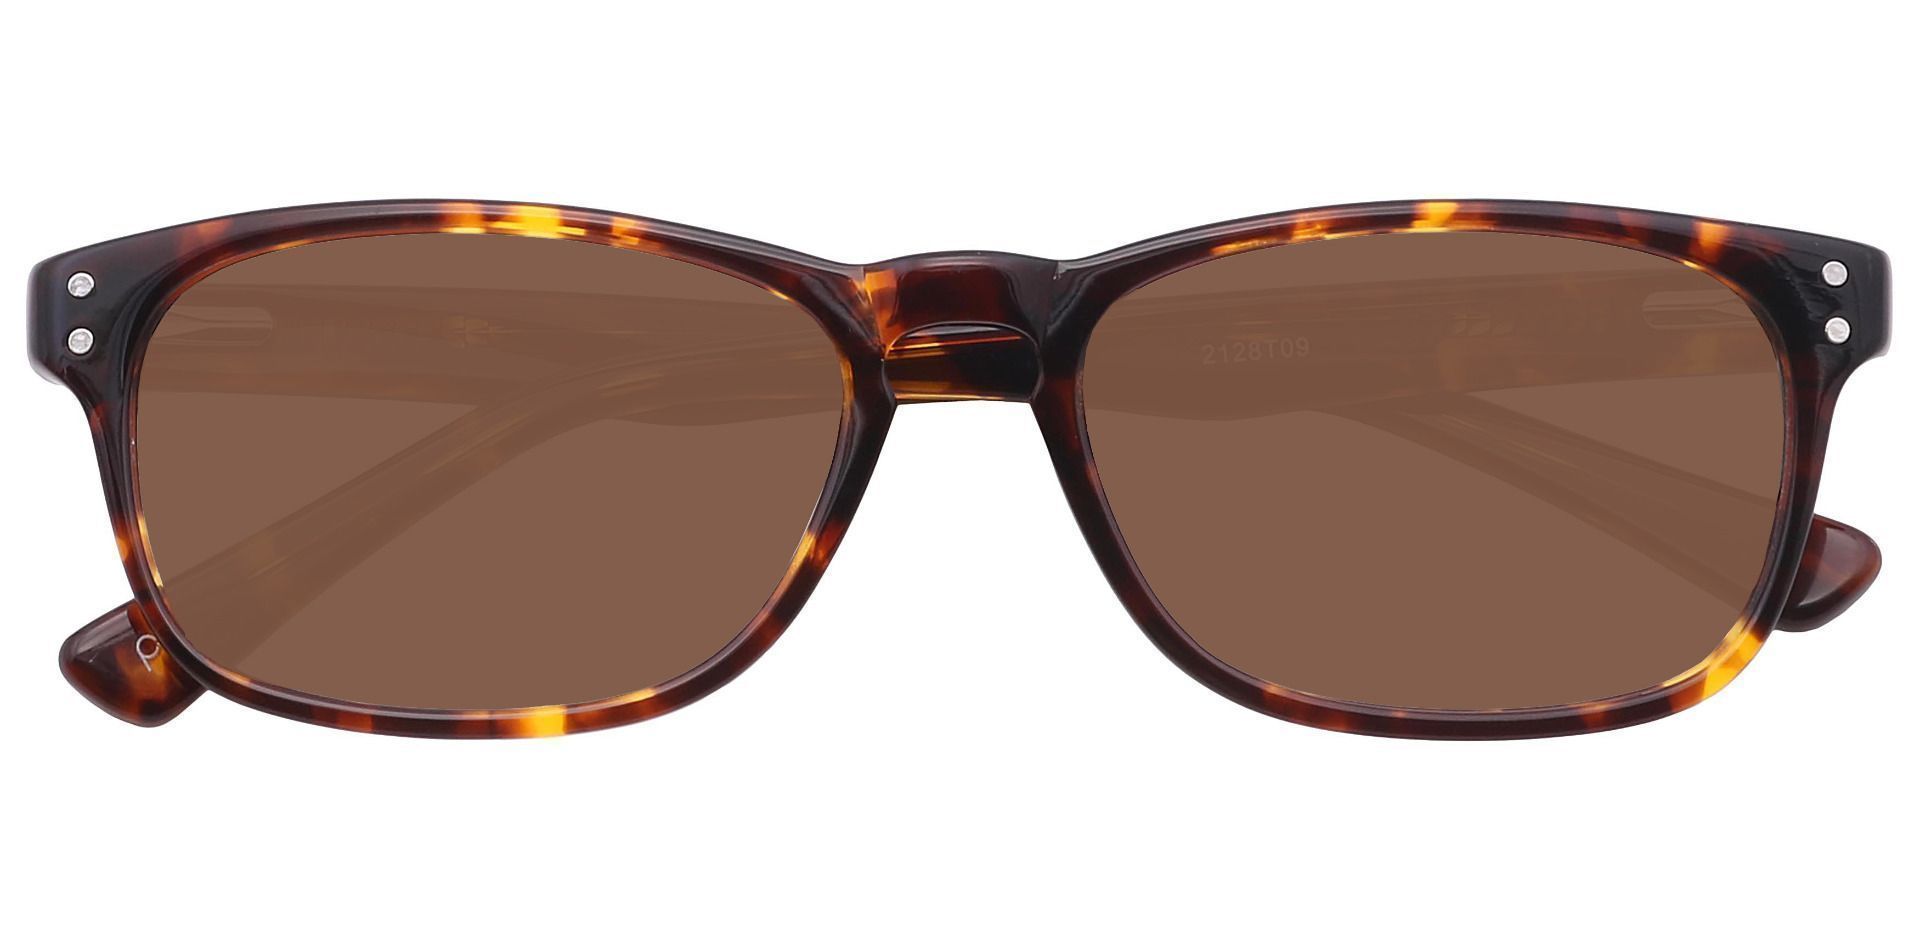 Morris Rectangle Reading Sunglasses - Tortoise Frame With Brown Lenses